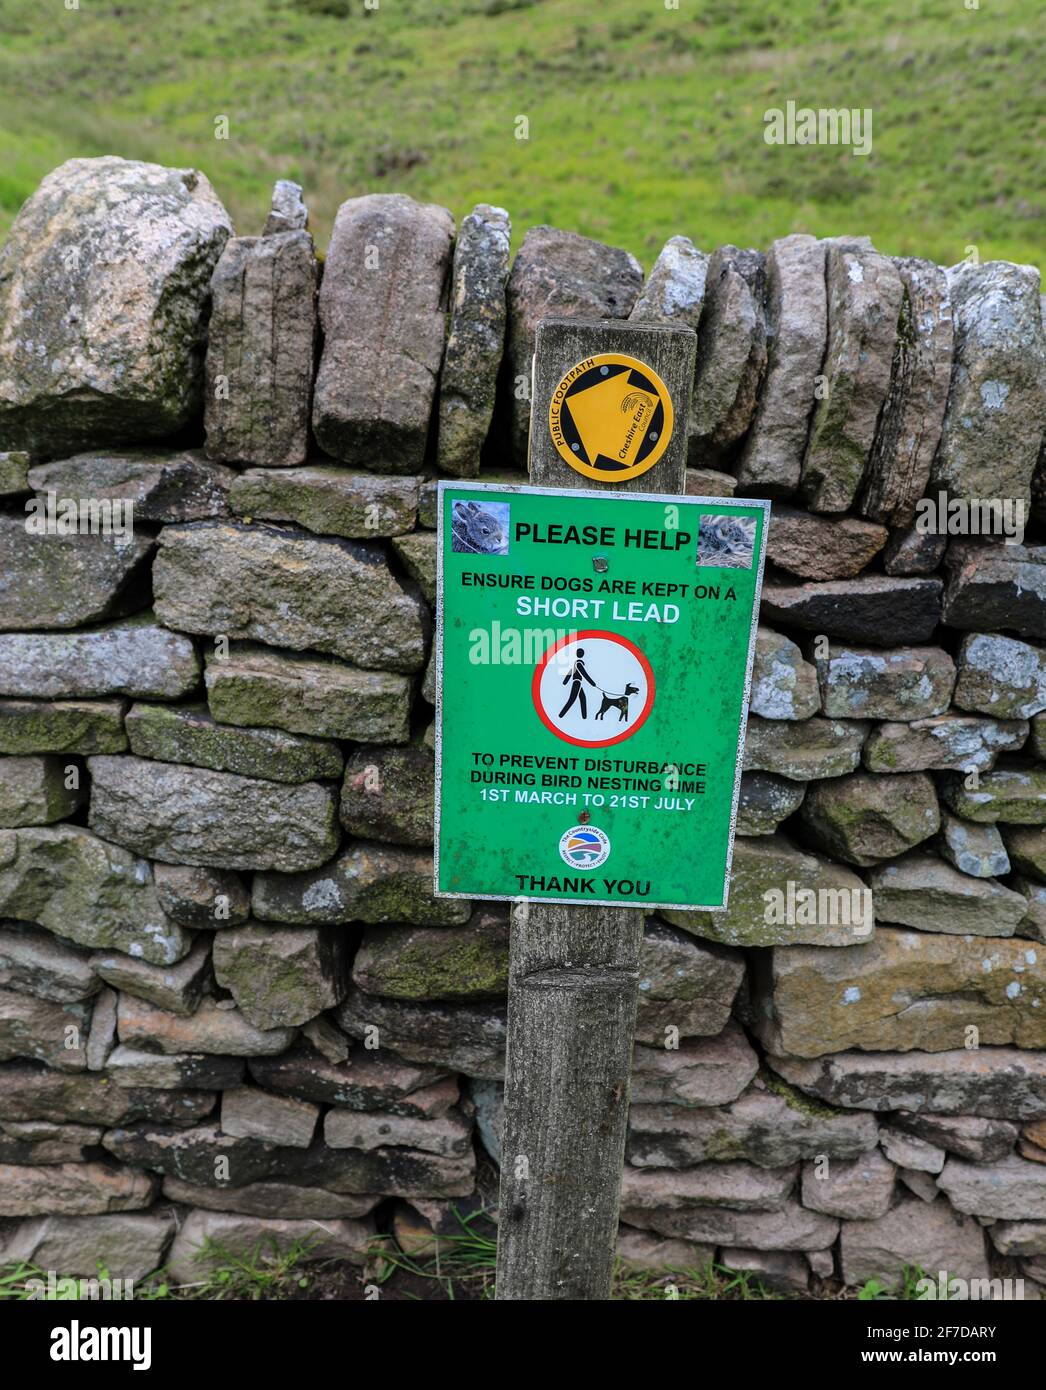 Ein Schild, das besagt, dass Hunde auf einer kurzen Führung sein sollten, um Störungen während der Vogelbrütersaison vom 1. März bis 21. Juli, in der englischen Grafschaft von Heshire, Großbritannien, zu verhindern Stockfoto